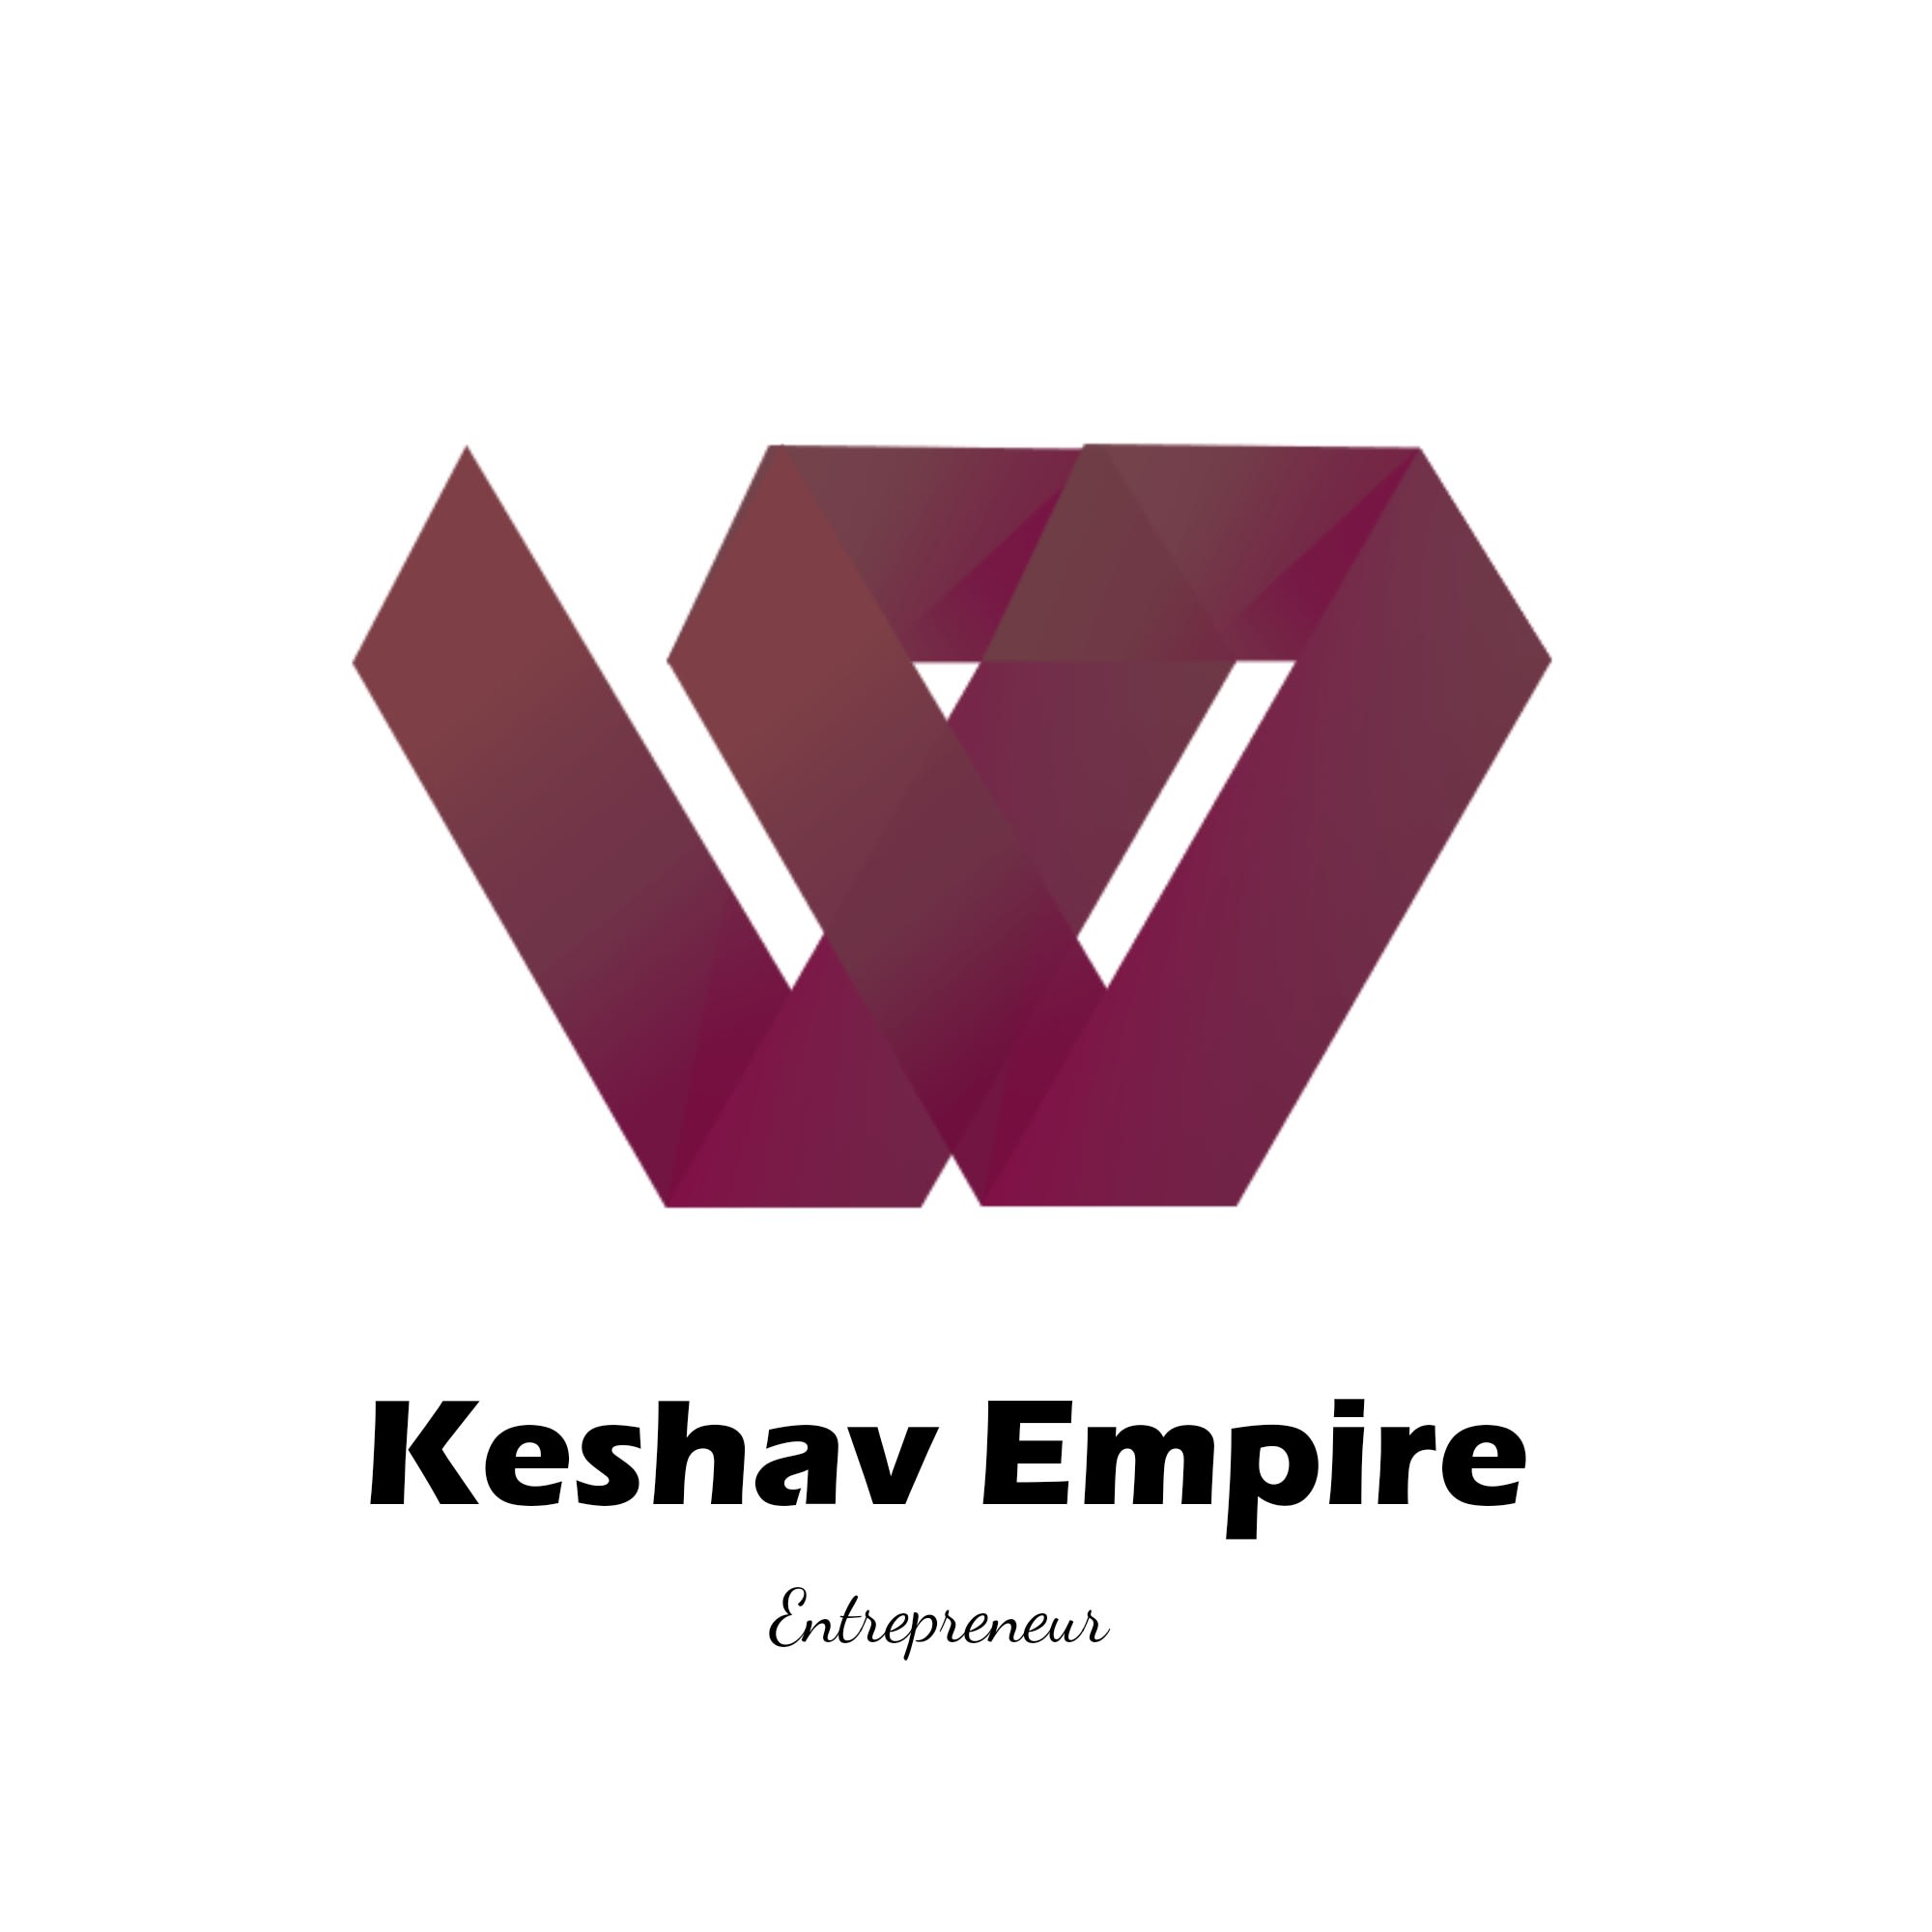 Keshav Empire